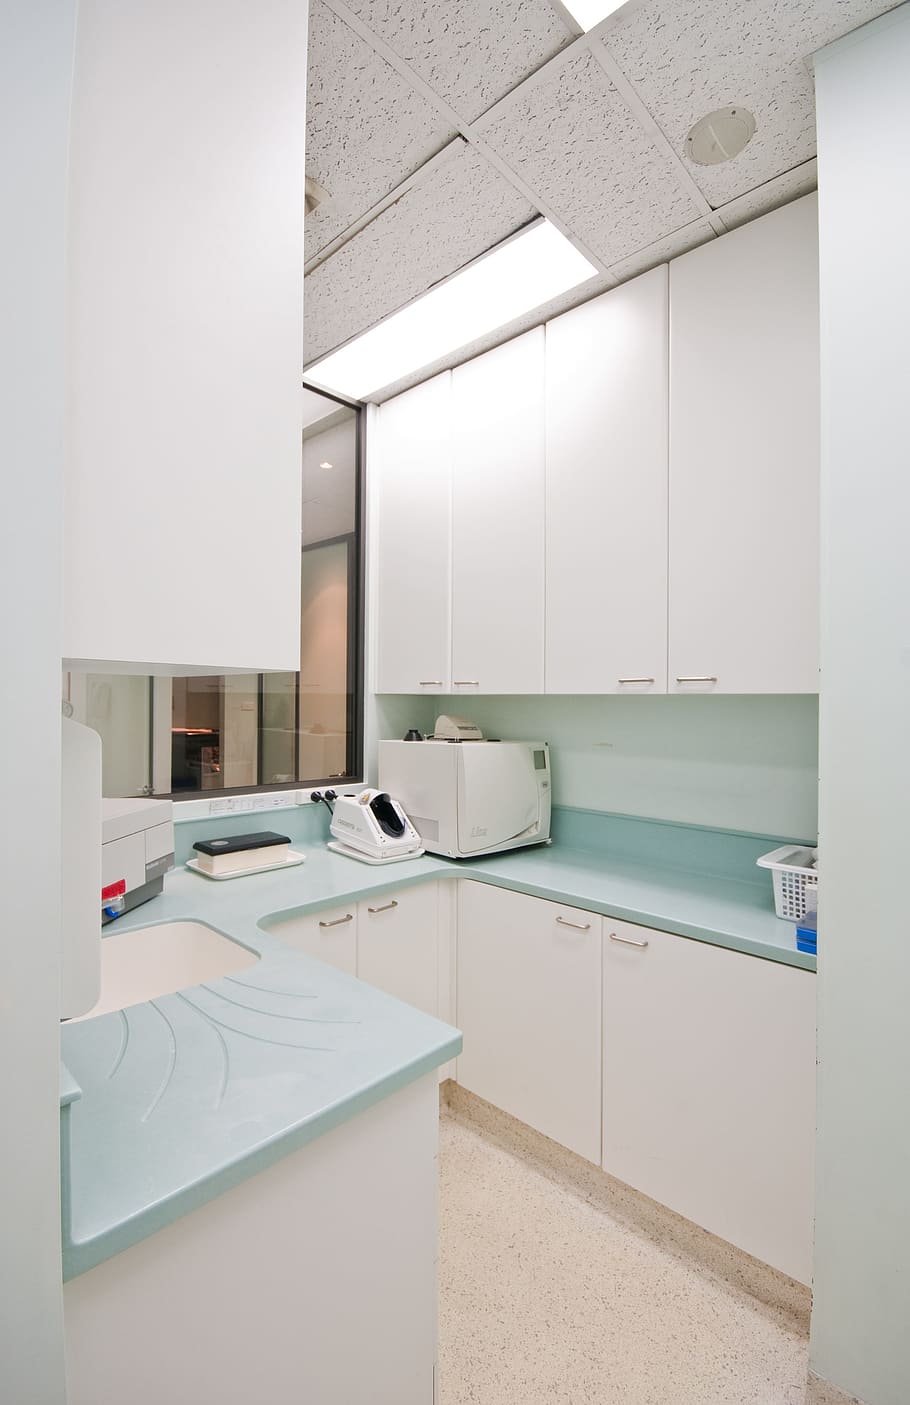 sterilisation room, dentist office, dental office, indoors, domestic room, furniture, home, sink, modern, white color